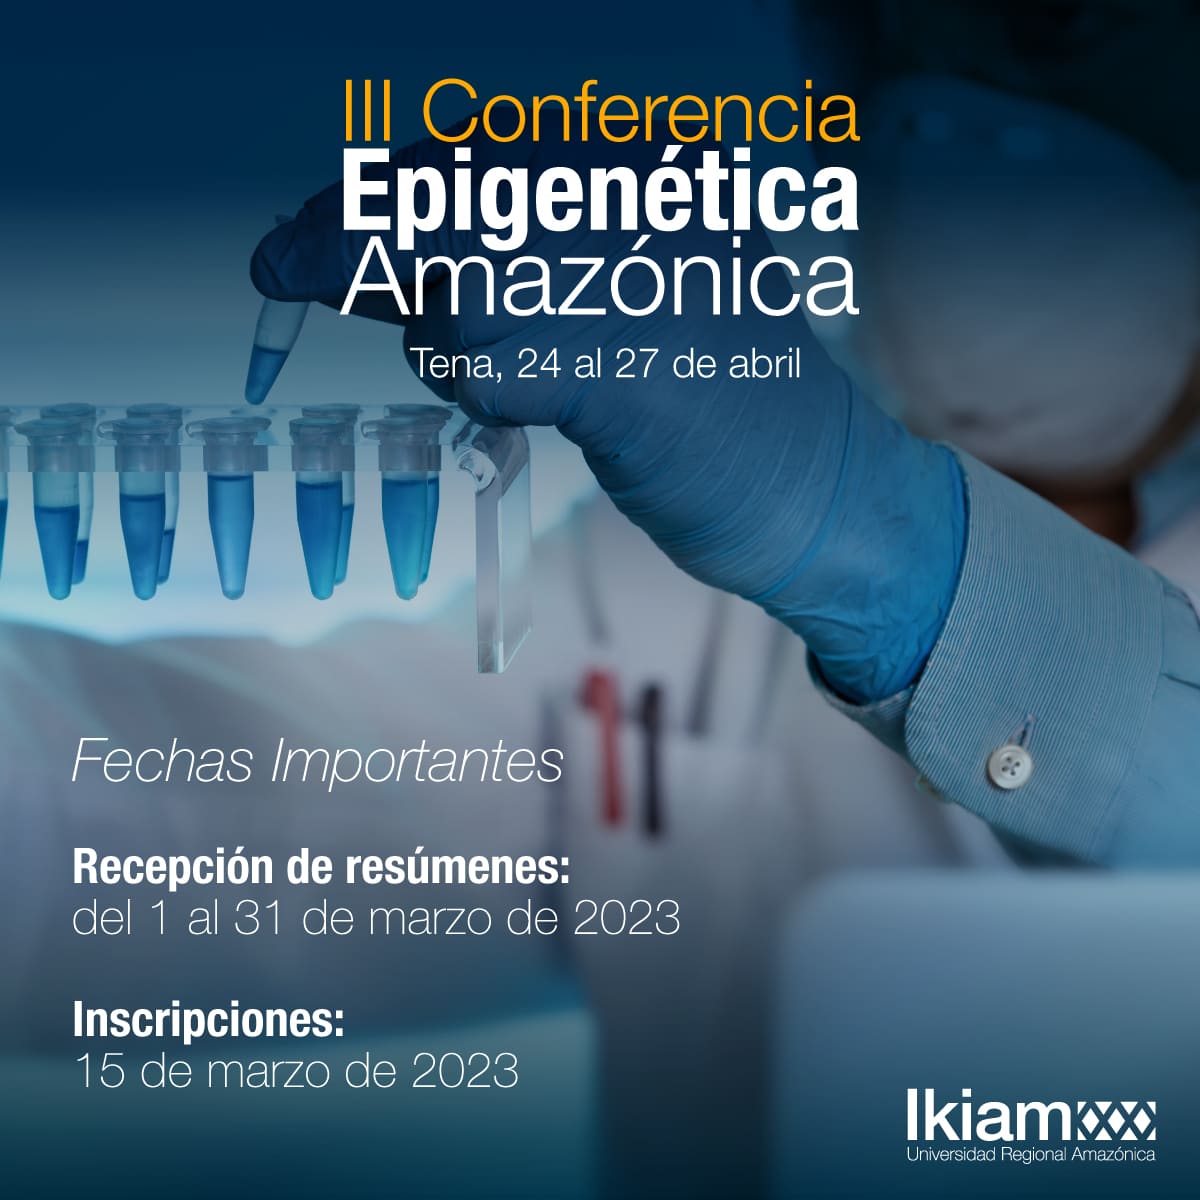 III-Conferencia-Epigenética-Amazónica-5